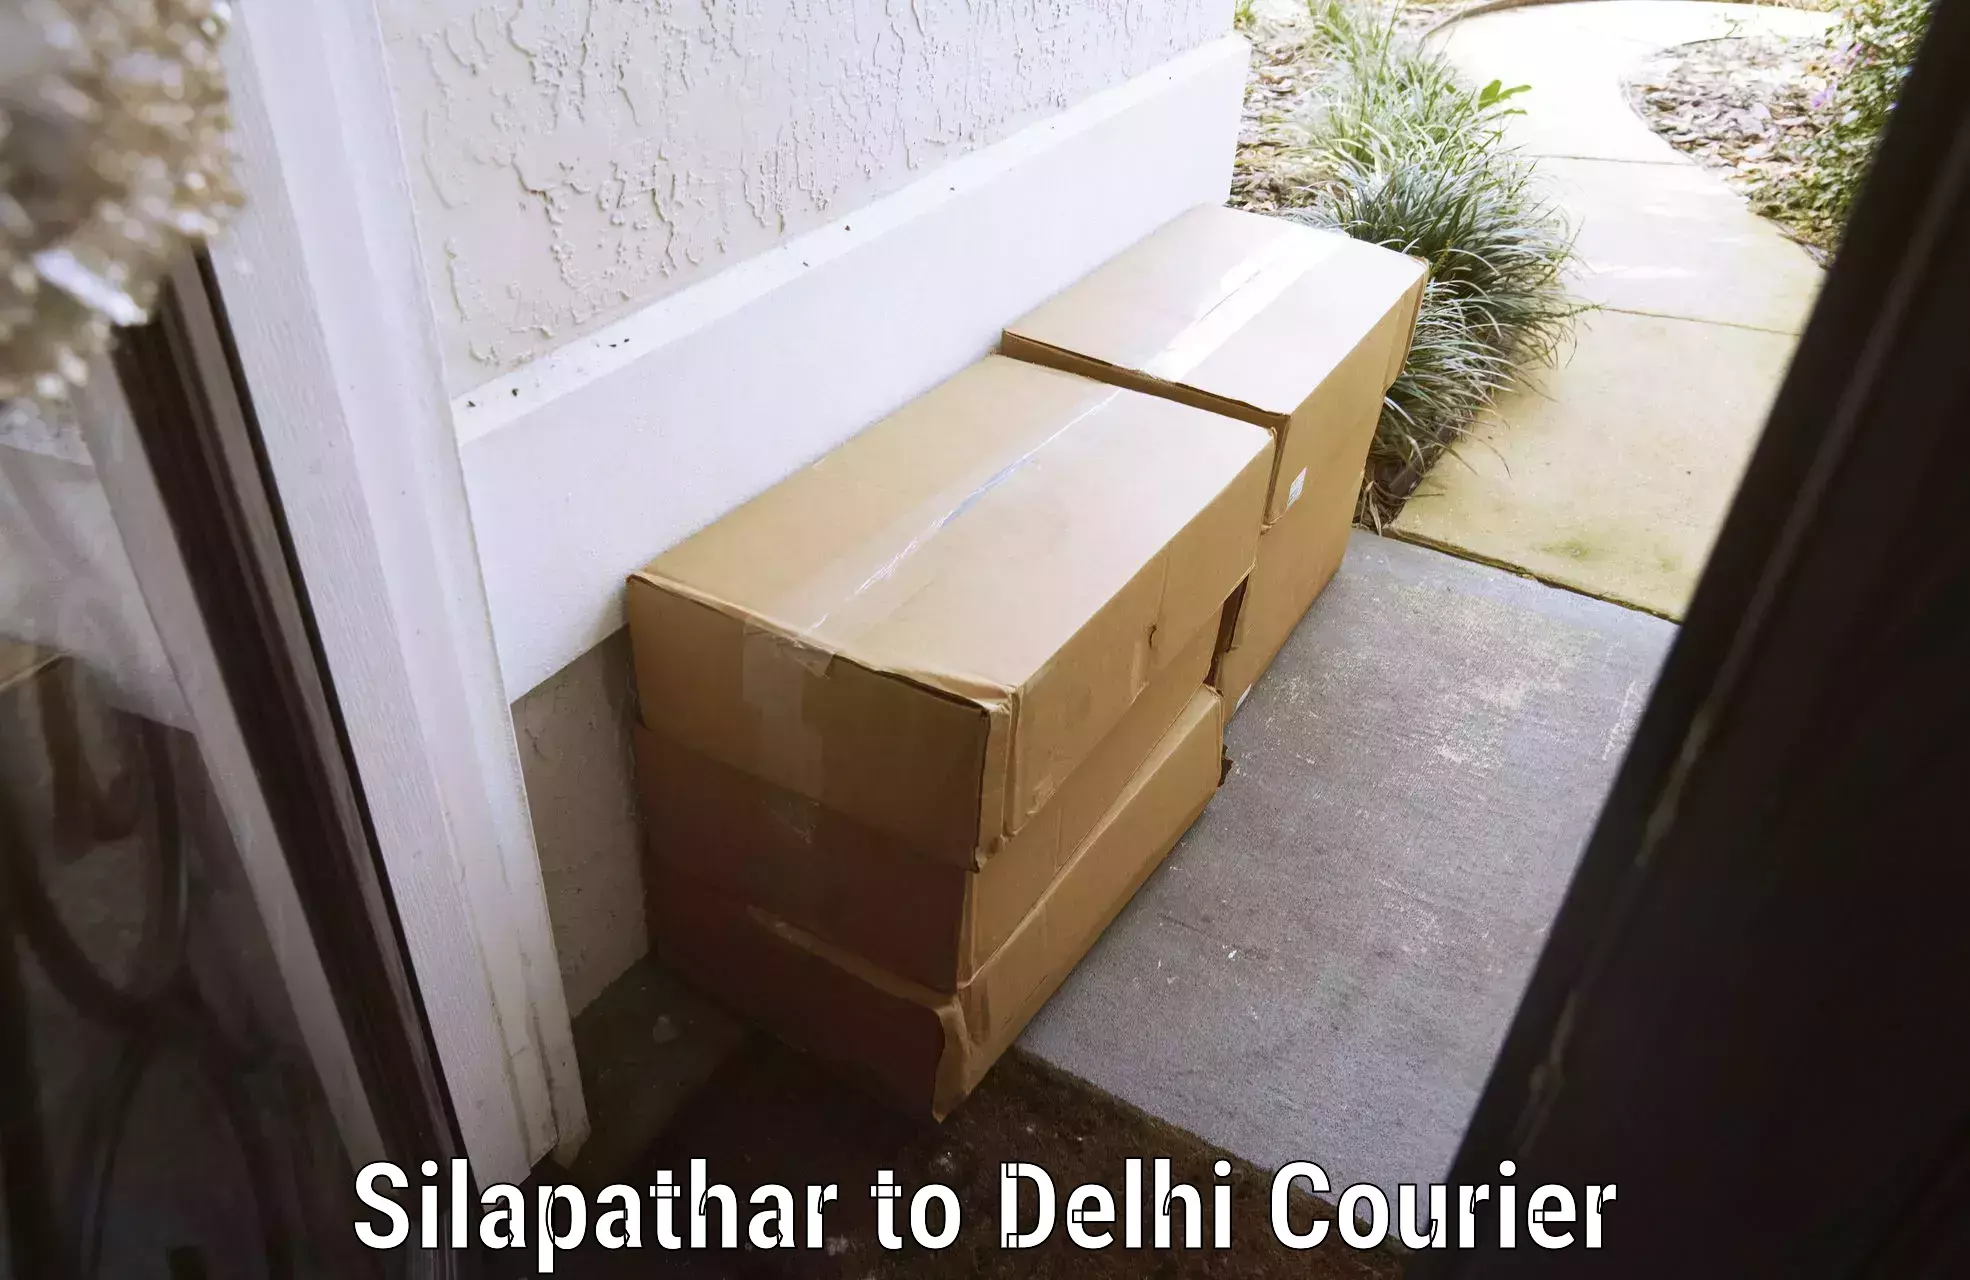 Baggage transport network Silapathar to Jamia Millia Islamia New Delhi